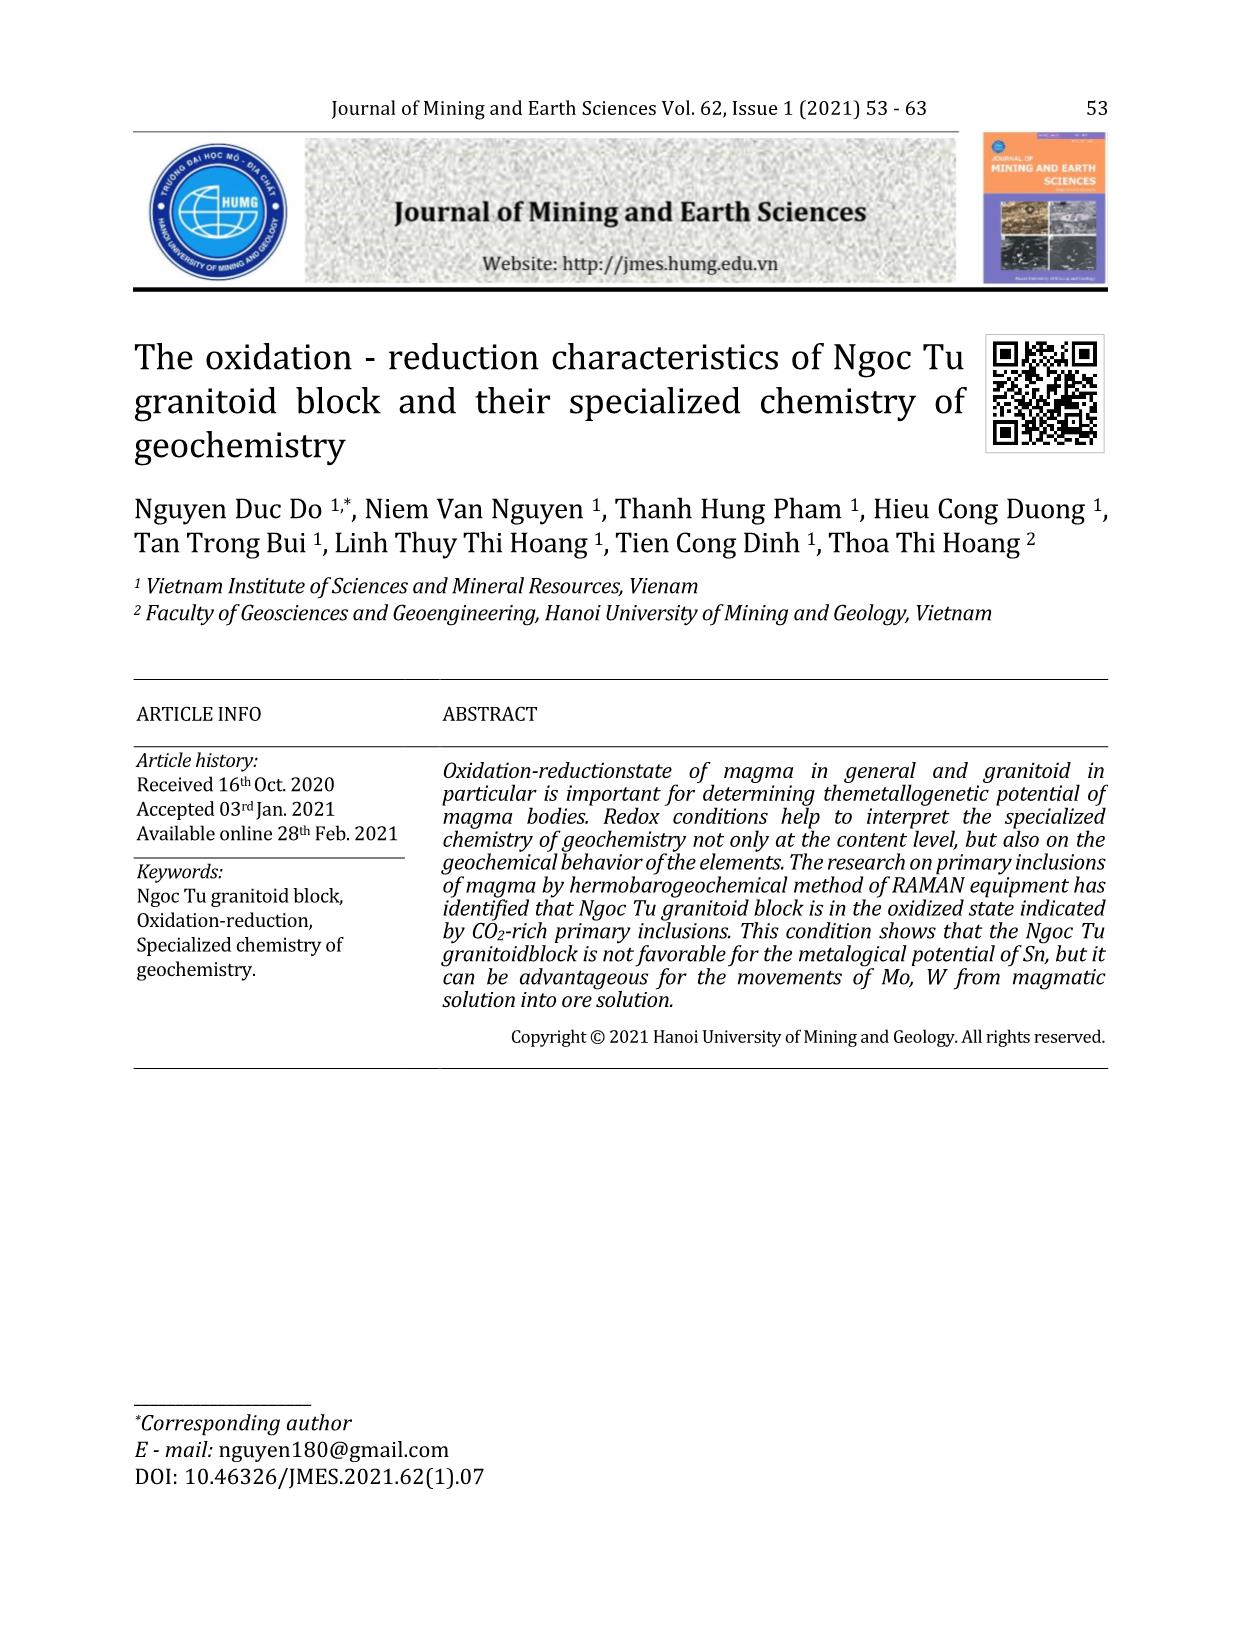 Đặc tính môi trường oxy hóa - khử của granitoid khối Ngọc Tụ và tính chuyên hóa địa hóa của chúng trang 1